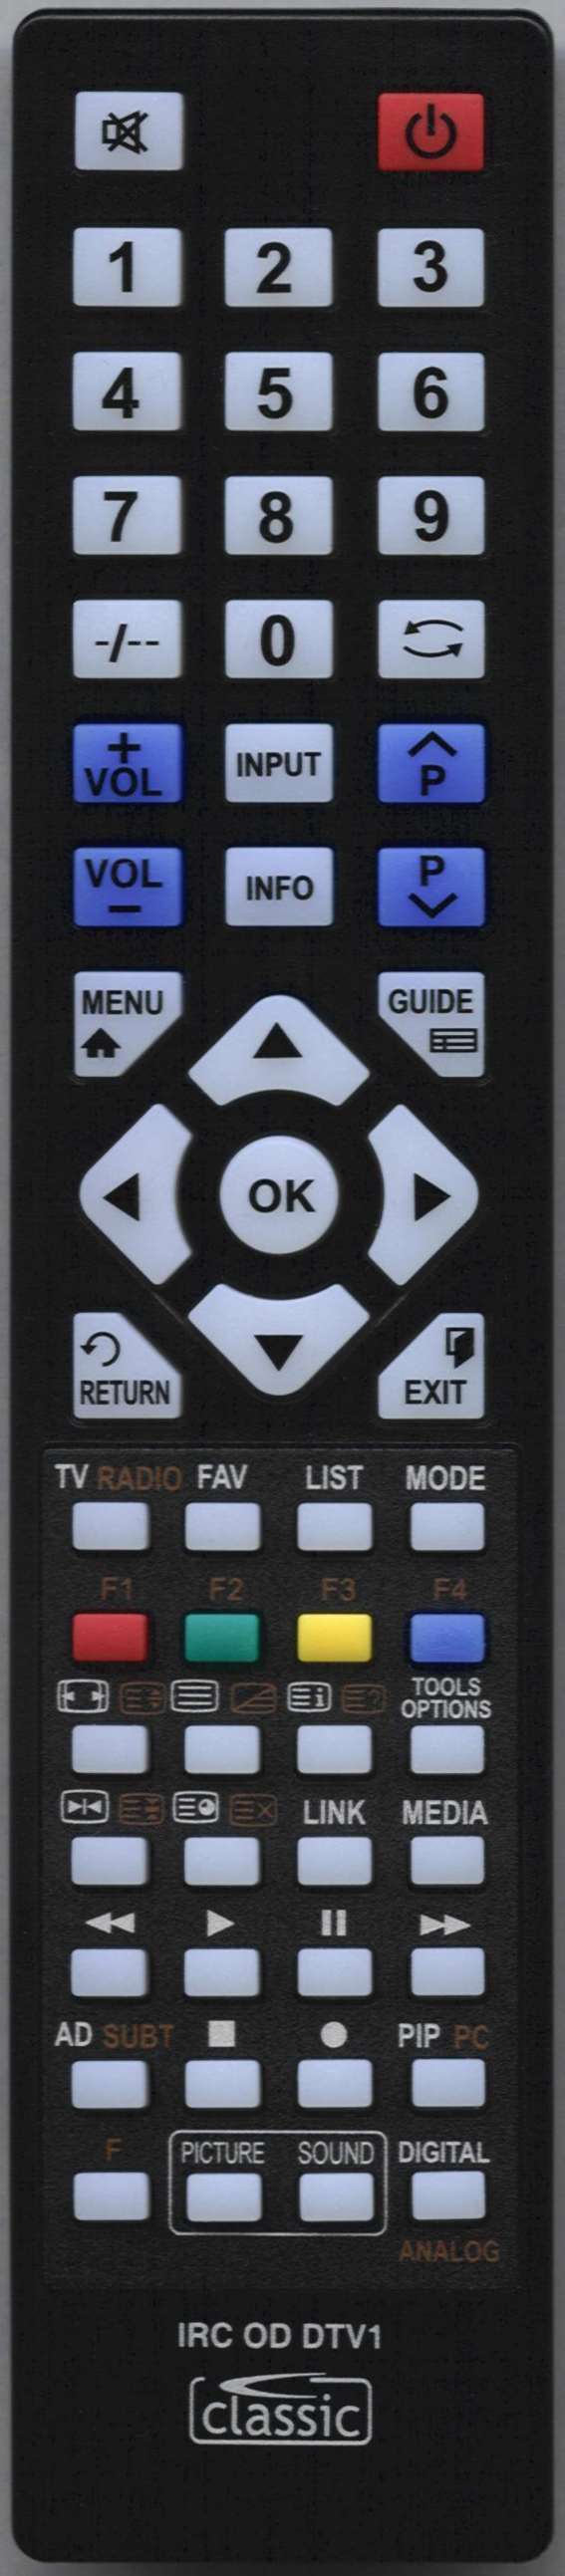 EMOTION 215/194G-GB-4B-FTCDU-UK Remote Control Alternative